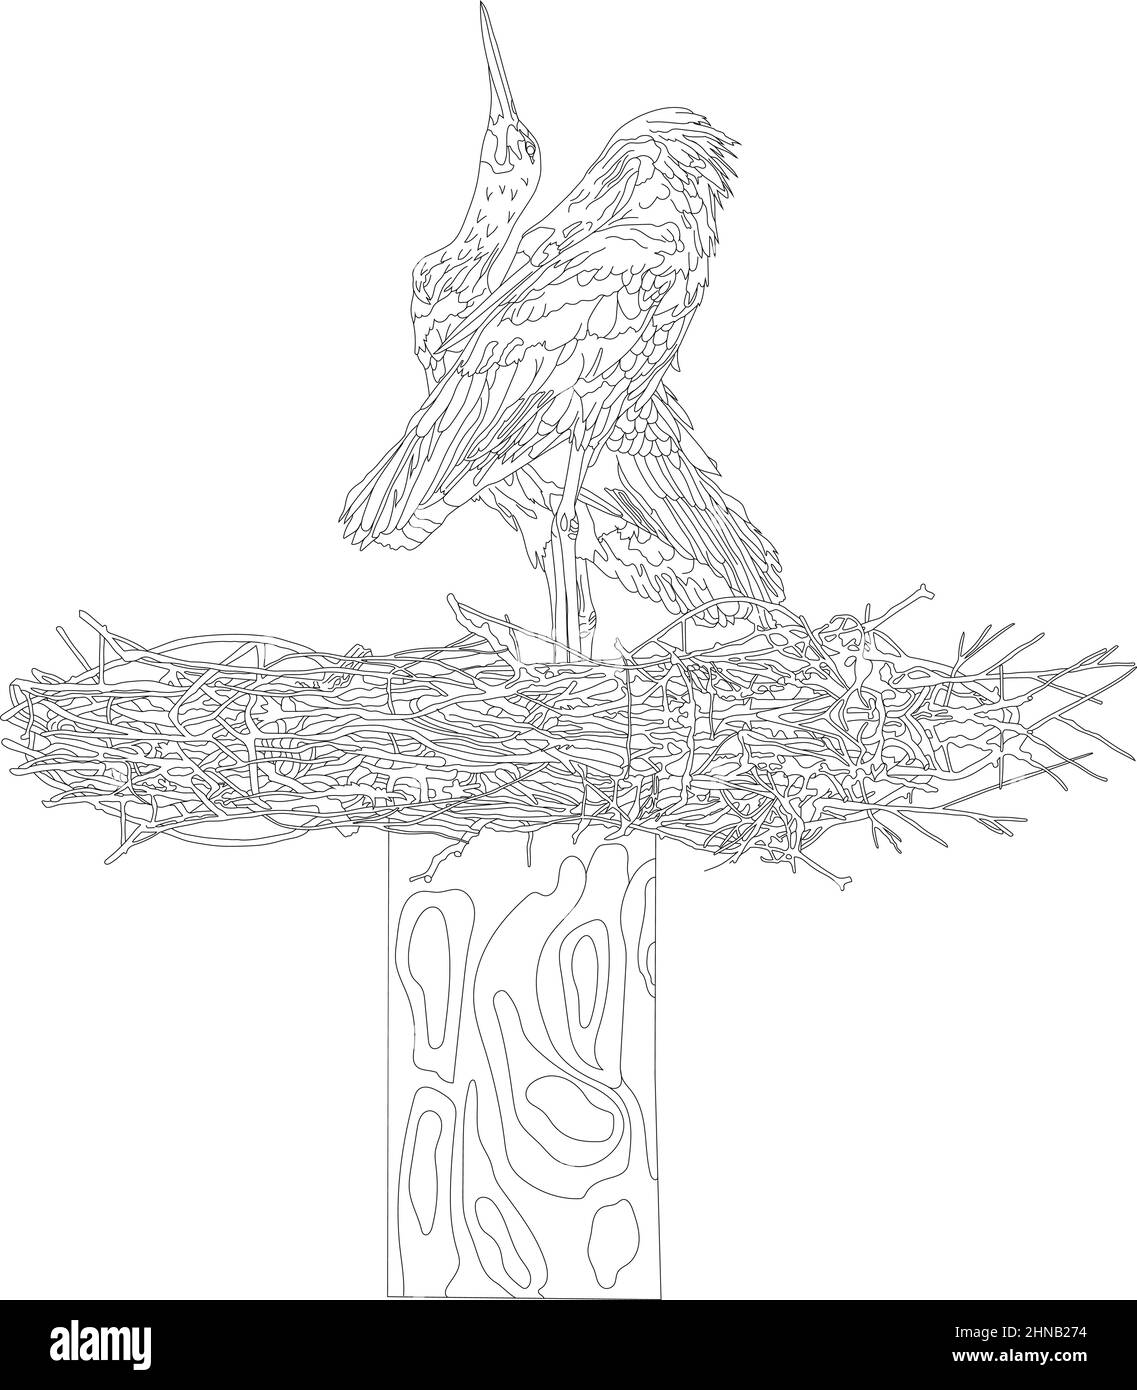 Ein Storchenpaar in einem Nest. Graue und weiße Störche im Umrissstil auf weißem Hintergrund. Vektorgrafik, Objekte der Isolation. Stock Vektor